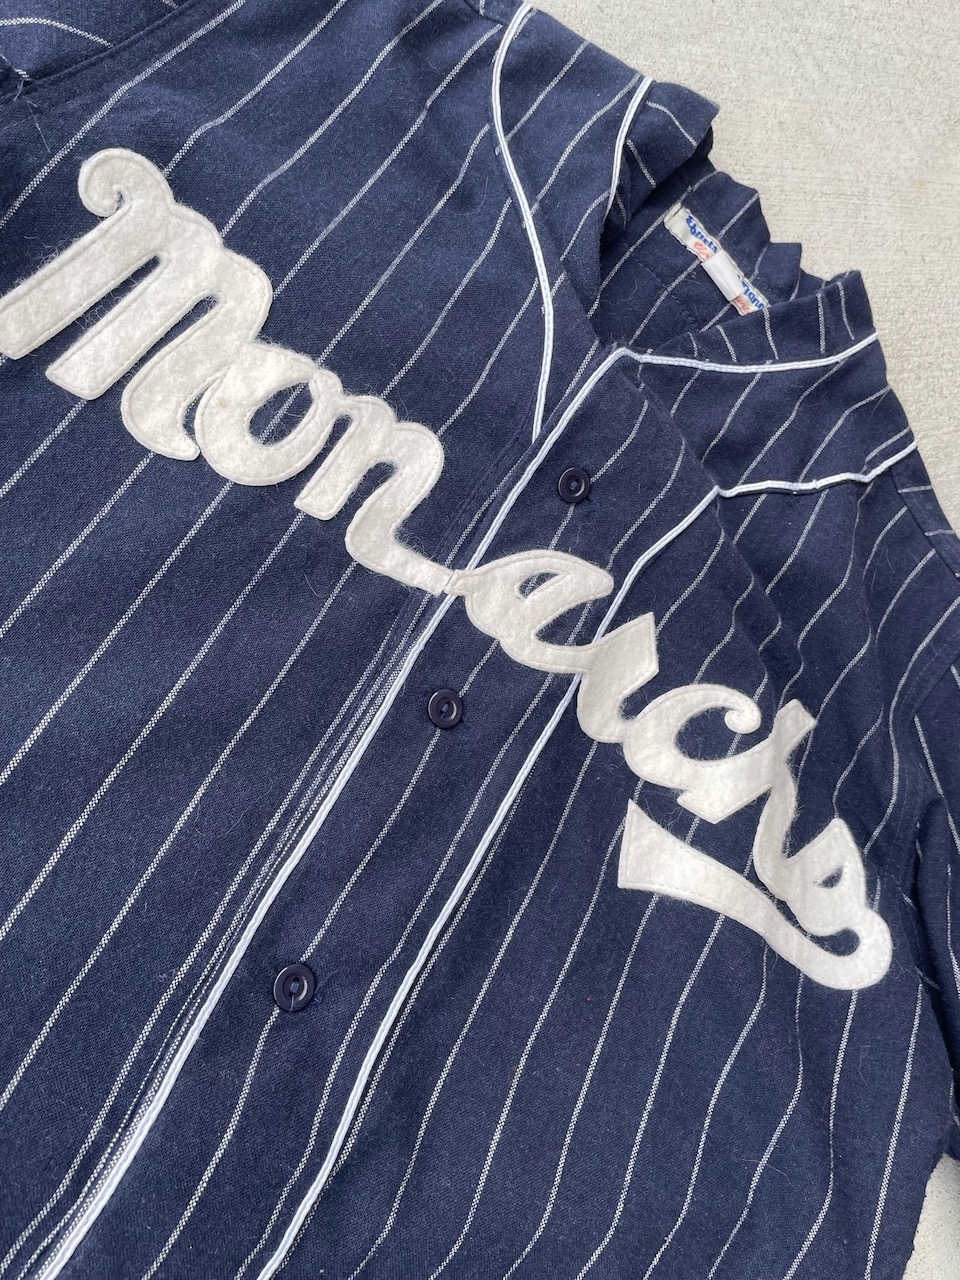 WDYWT] Ebbets Field Flannels baseball jersey : r/streetwear